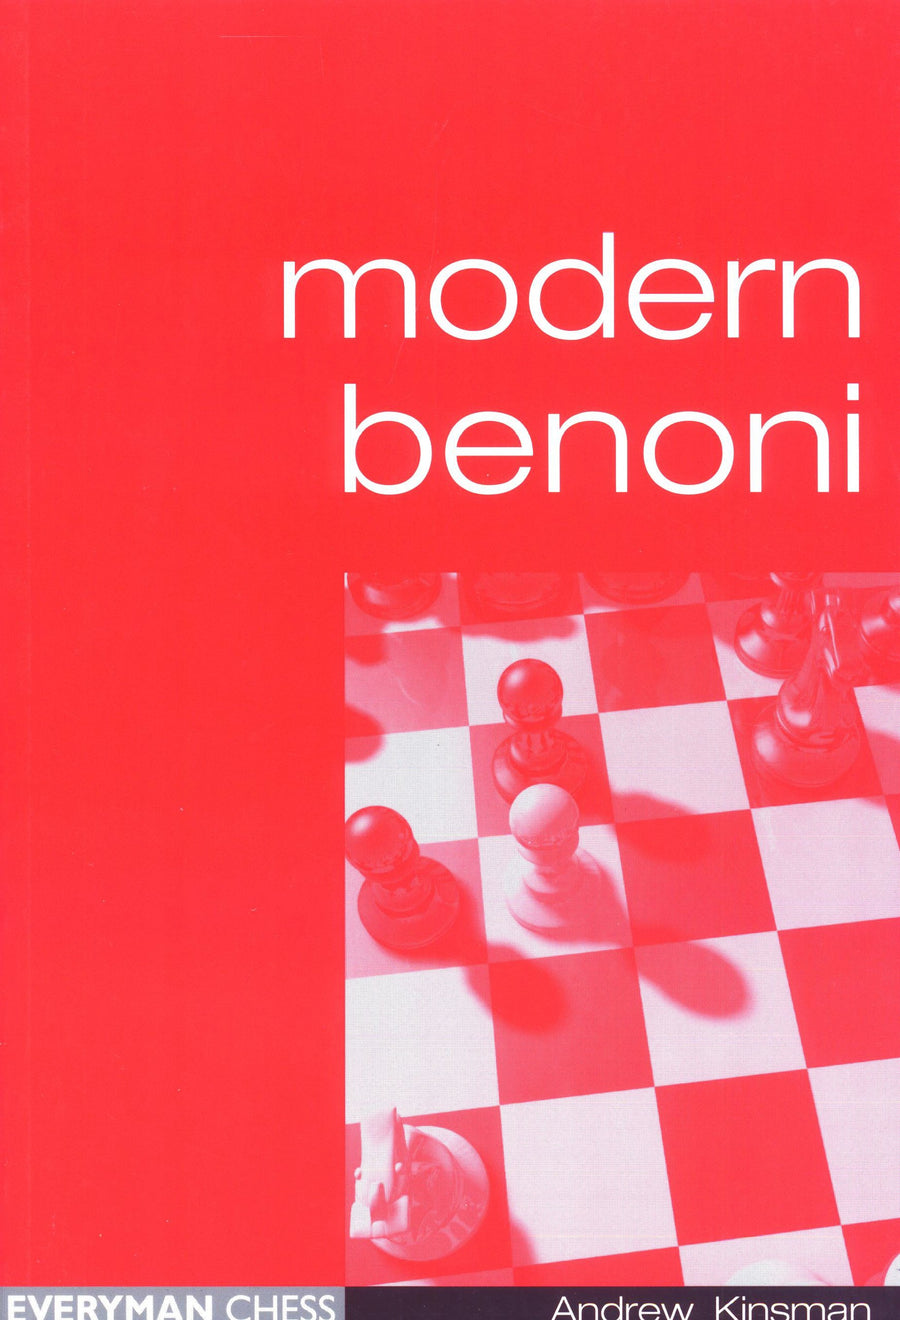 MODERN BENONI TRAP Armadilha na Defesa Benoni Moderna #chess #chessto